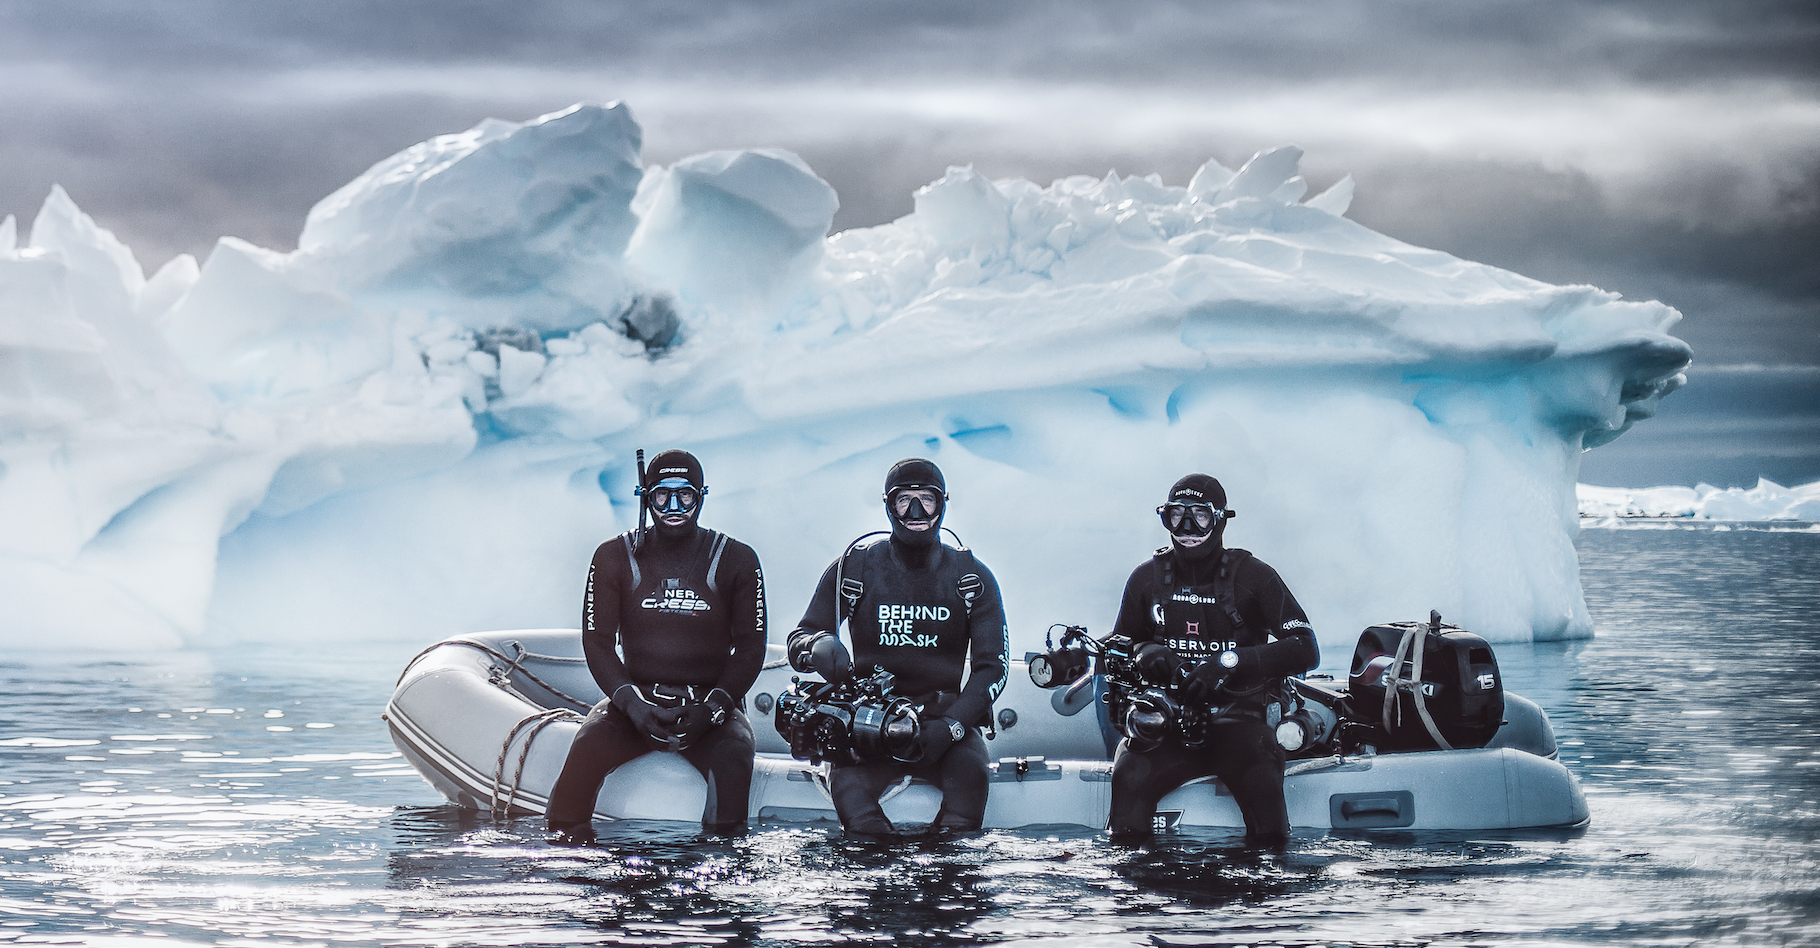 En compagnie de l’apnéiste Guillaume Nery et du caméraman Florian Fisher, le photographe Greg Lecoeur a plongé dans les eaux glacées de l’Antarctique. Il nous&nbsp;ramène de cet écosystème hostile et fragile, des images rares et merveilleuses. © Greg Lecoeur, Tous droits réservés